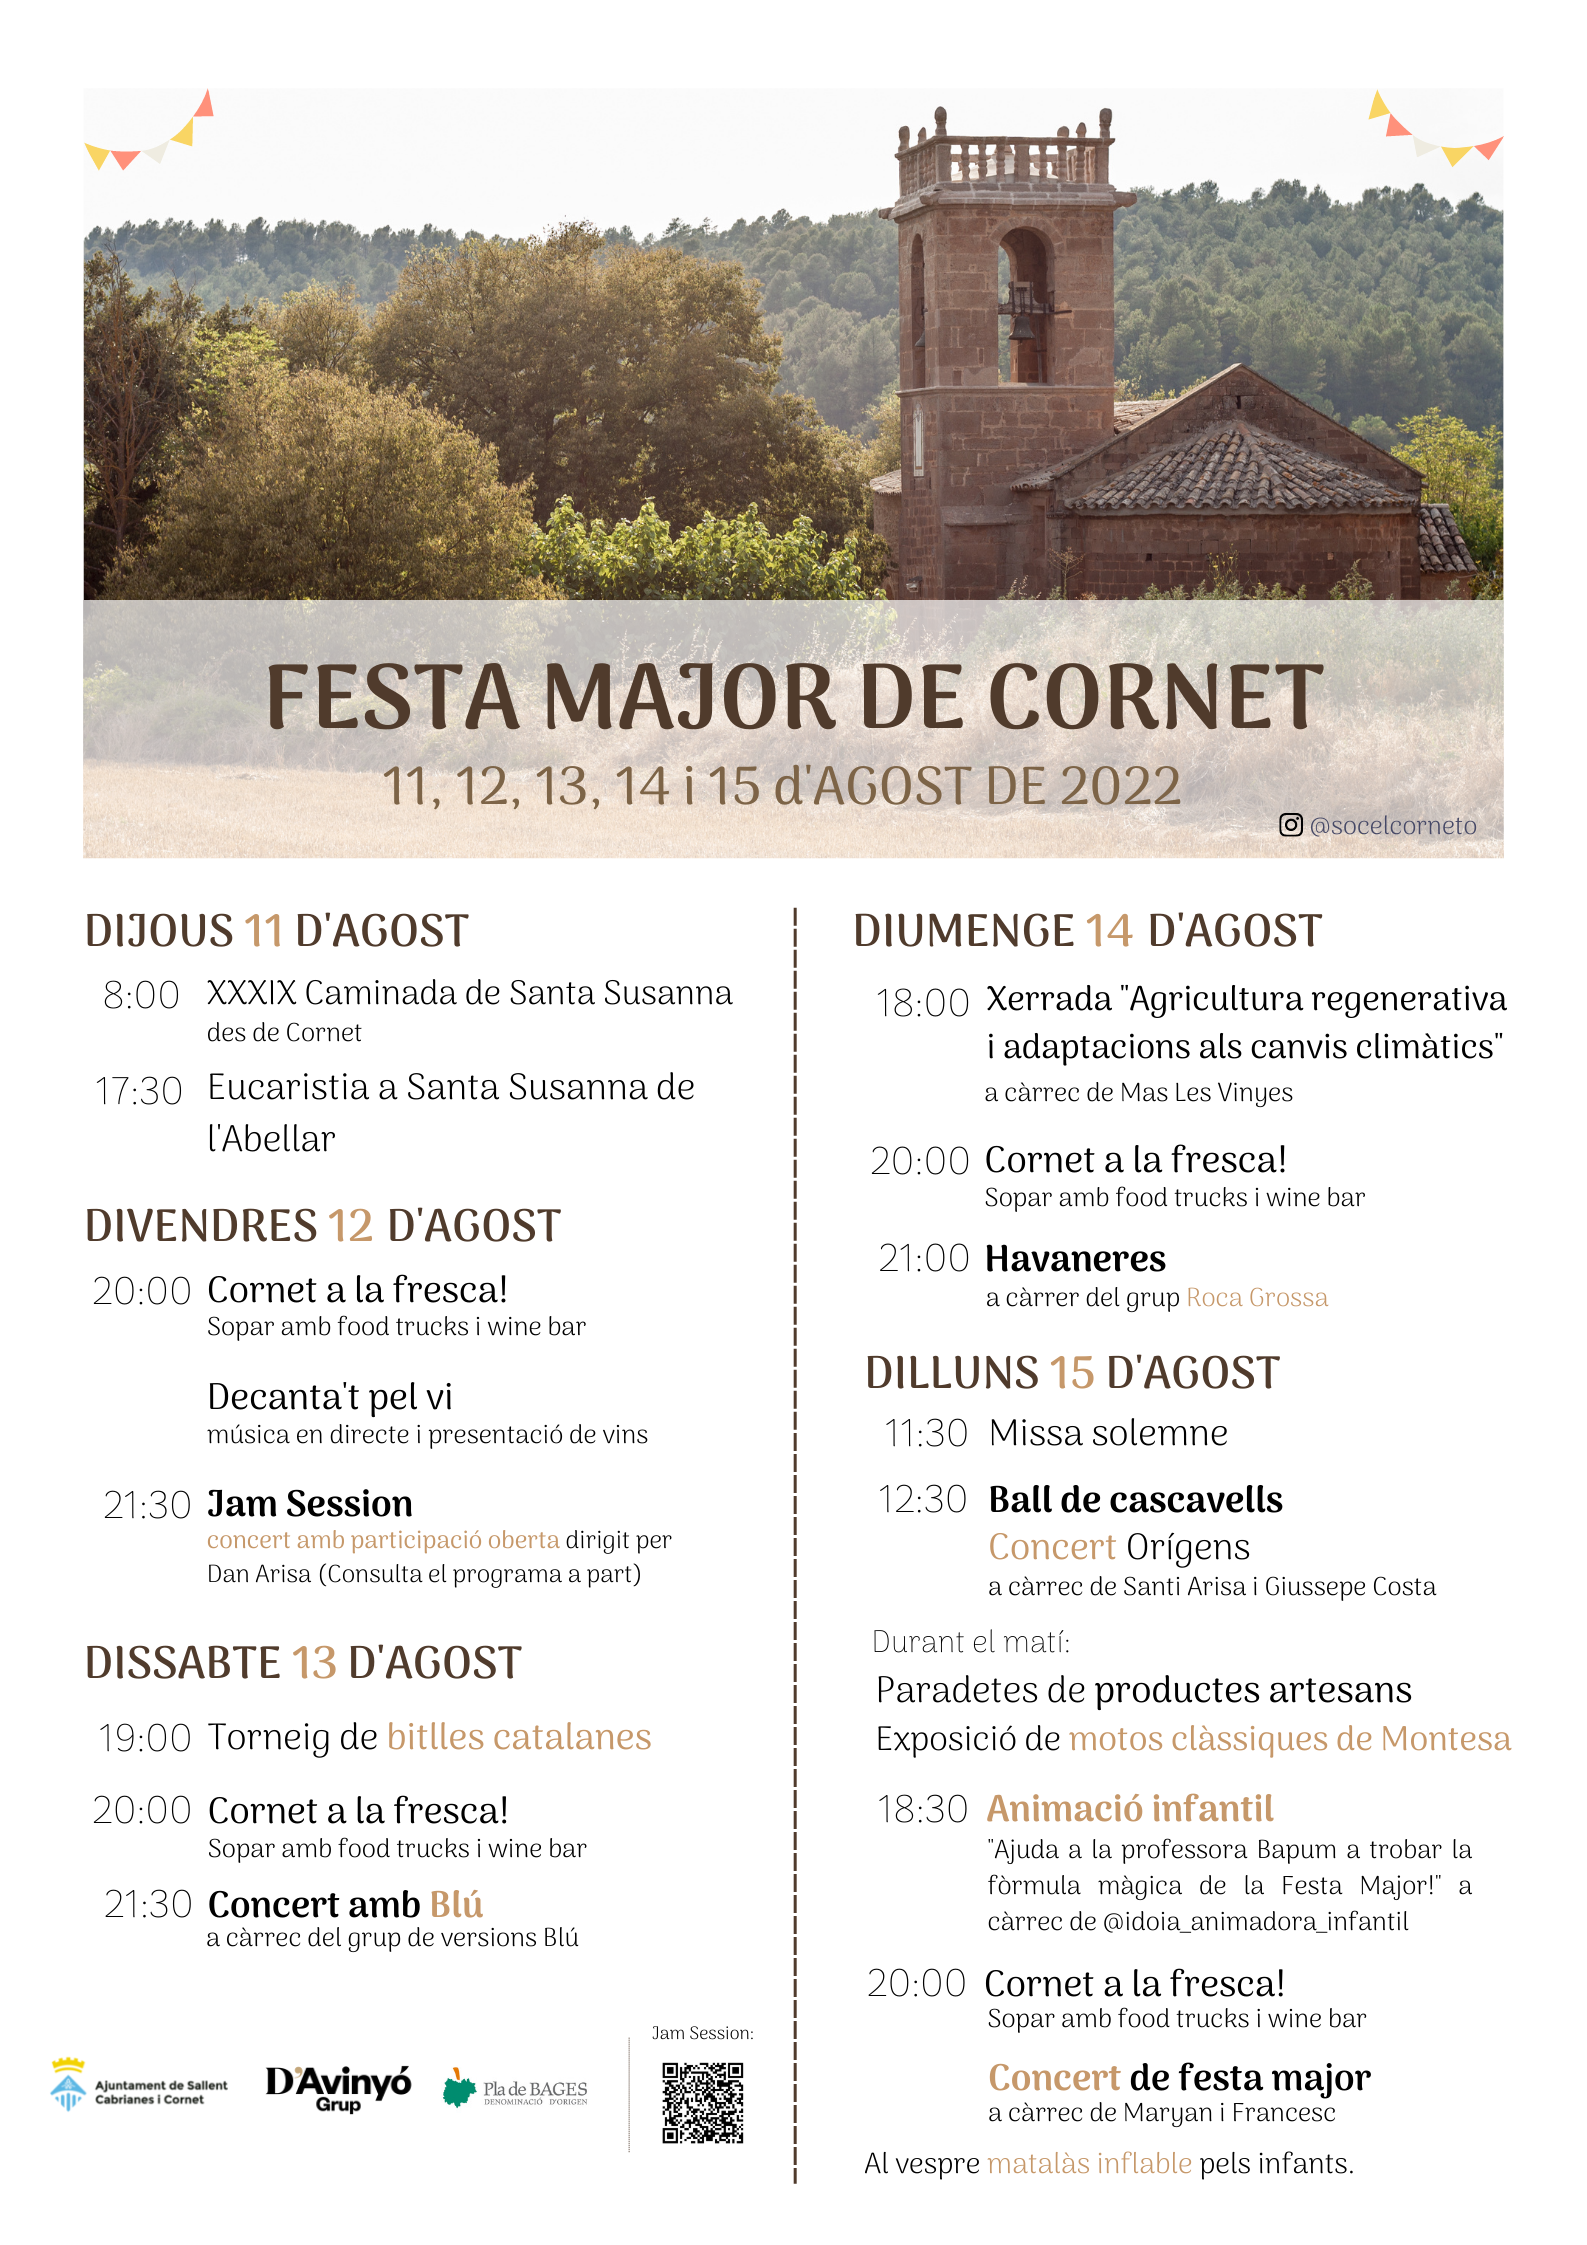 Festa Major de Cornet, de l'11 al 15 d'agost